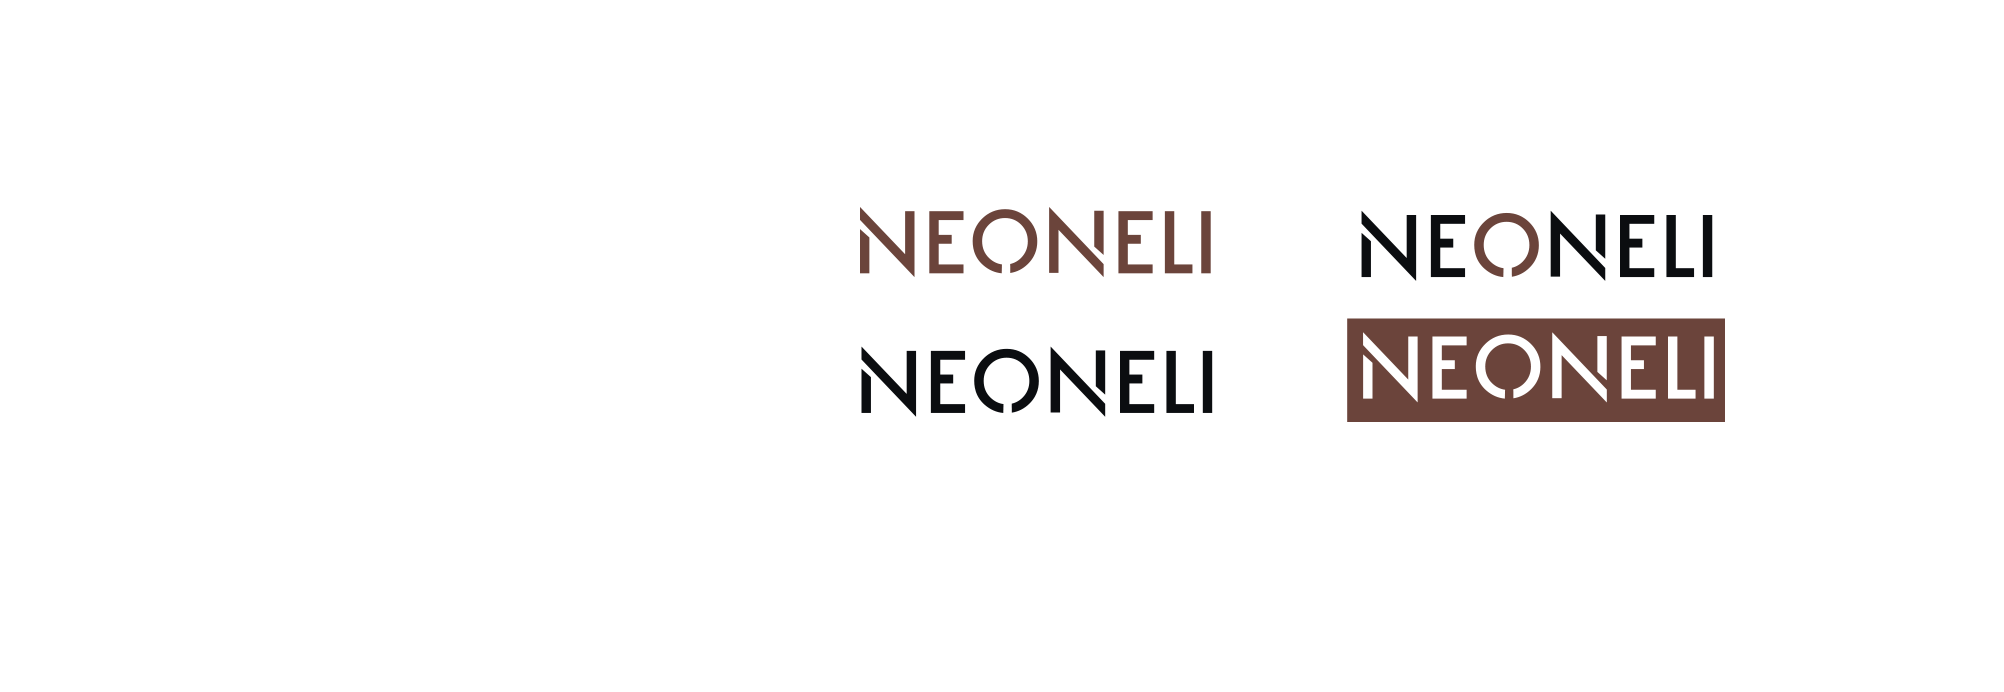 Neoneli4